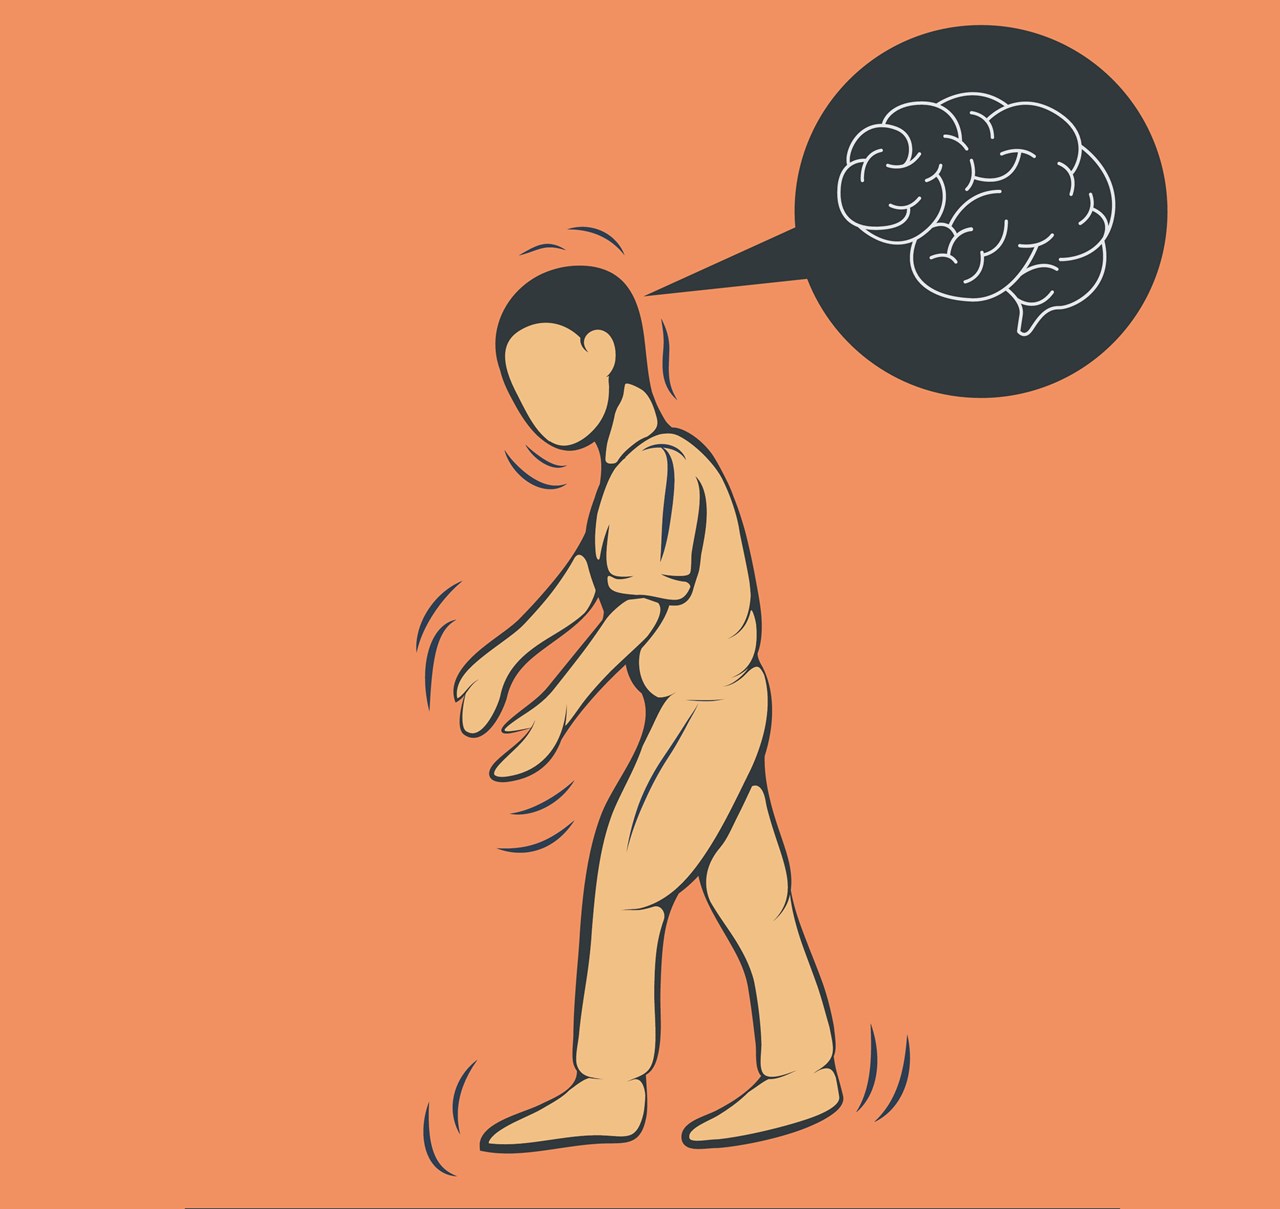 Illustration med en person med darrande gång för att illustrera Parkinson's sjukdom.